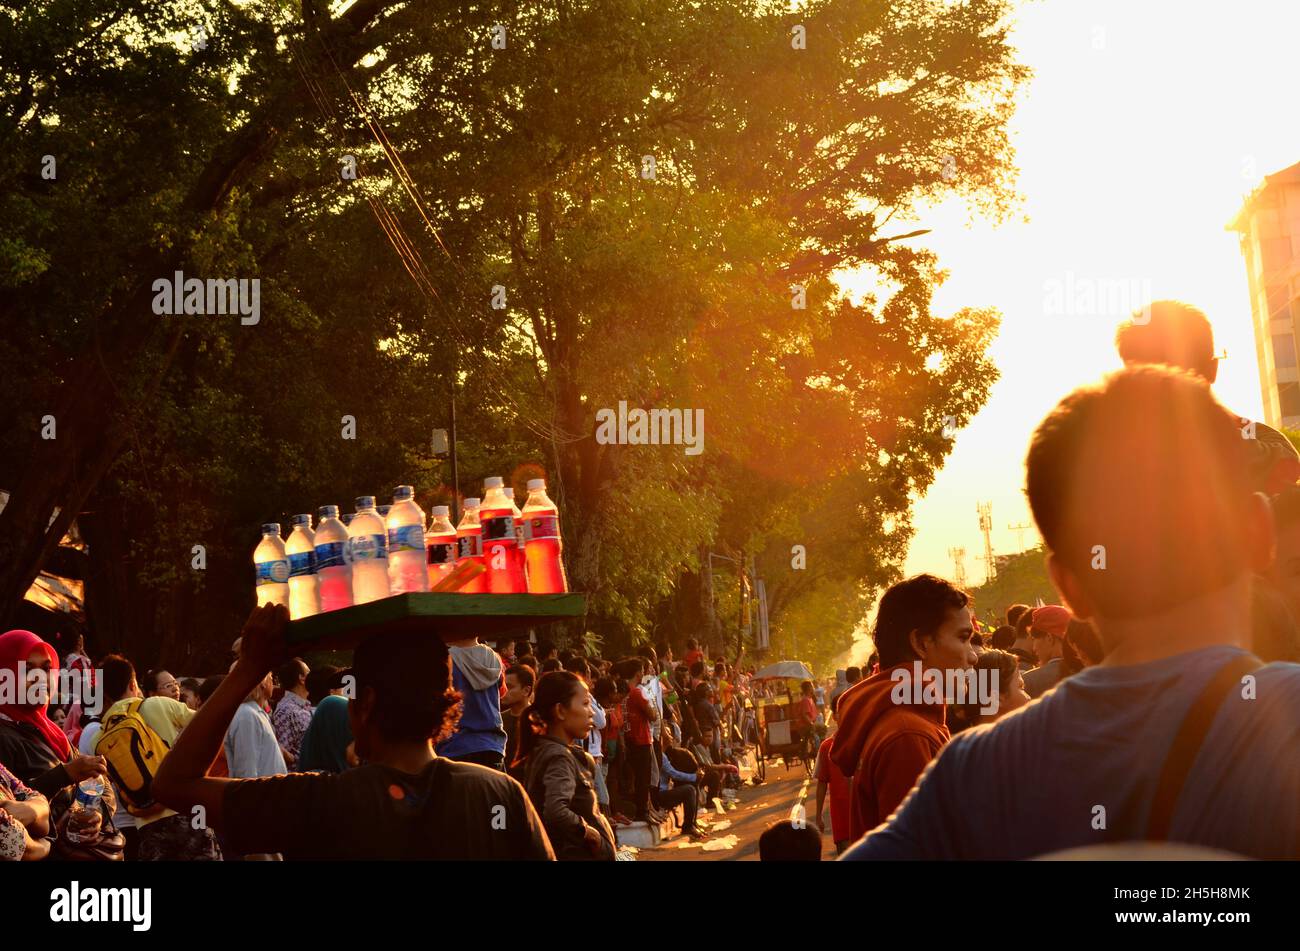 Solo Batik Carnival event held on Jalan Slamet Riyadi, Solo, Central Java, Indonesia. Stock Photo